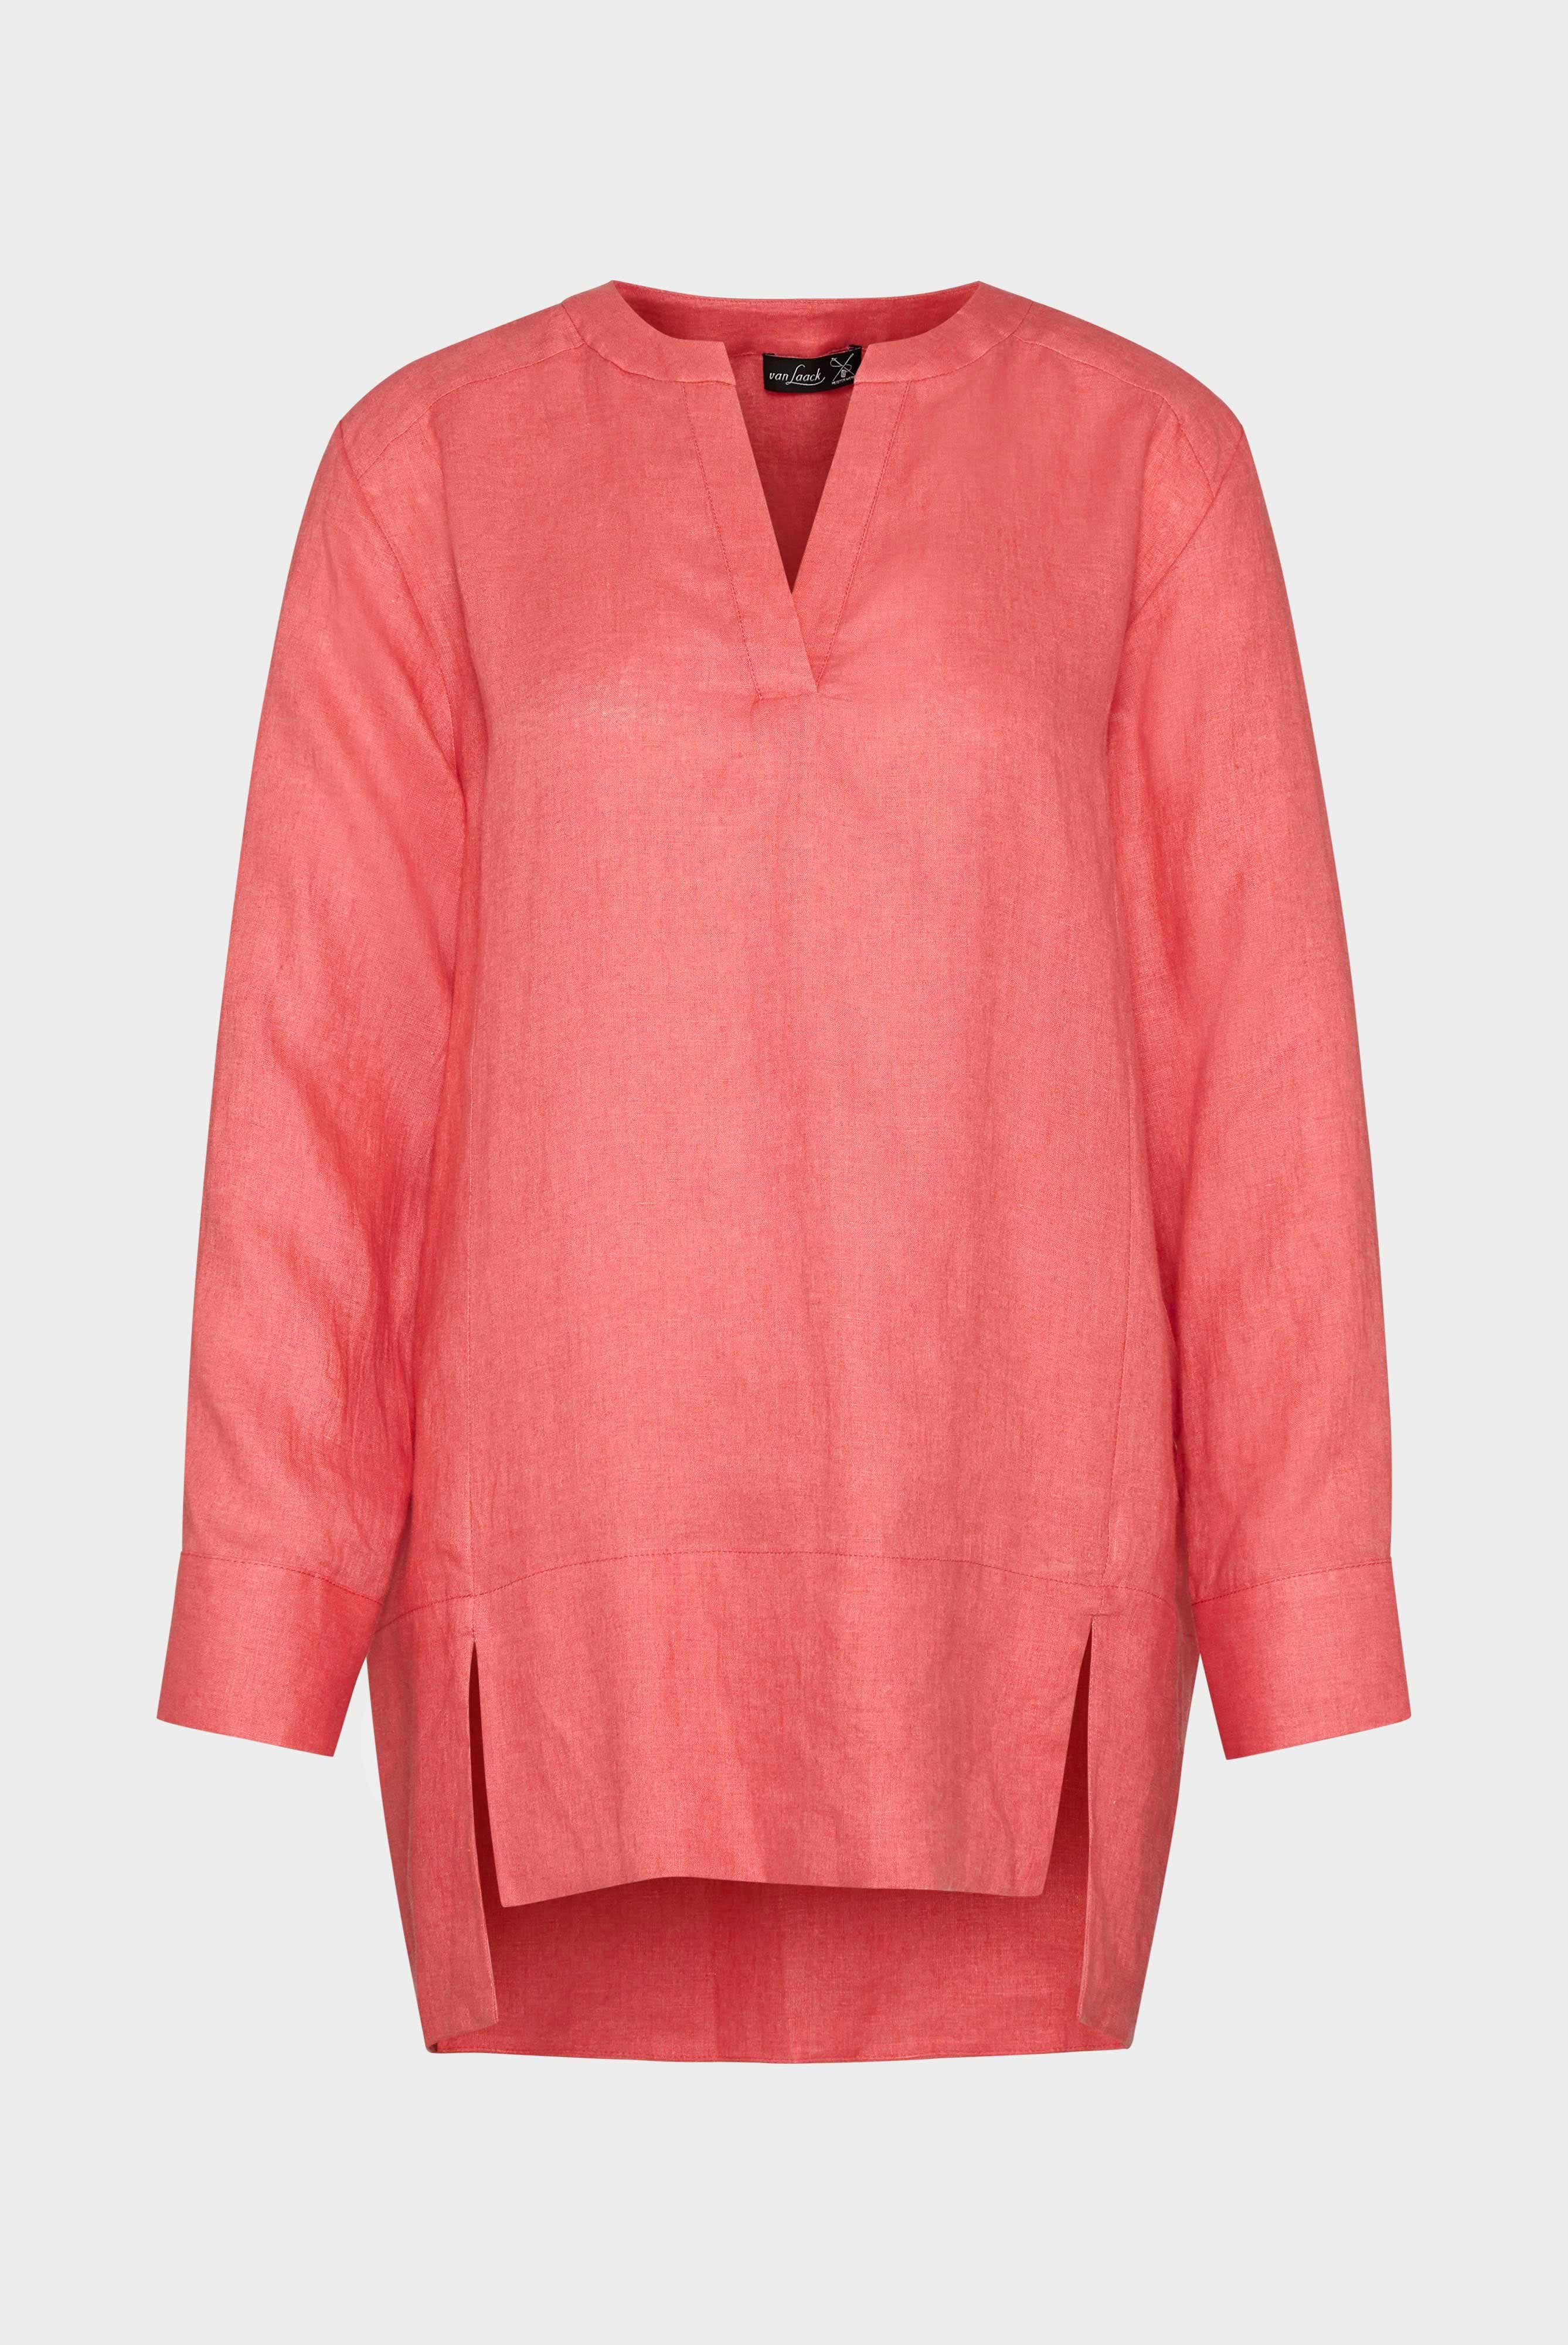 Casual Blouses+Linen tunic blouse+05.526H.P8.150555.440.34